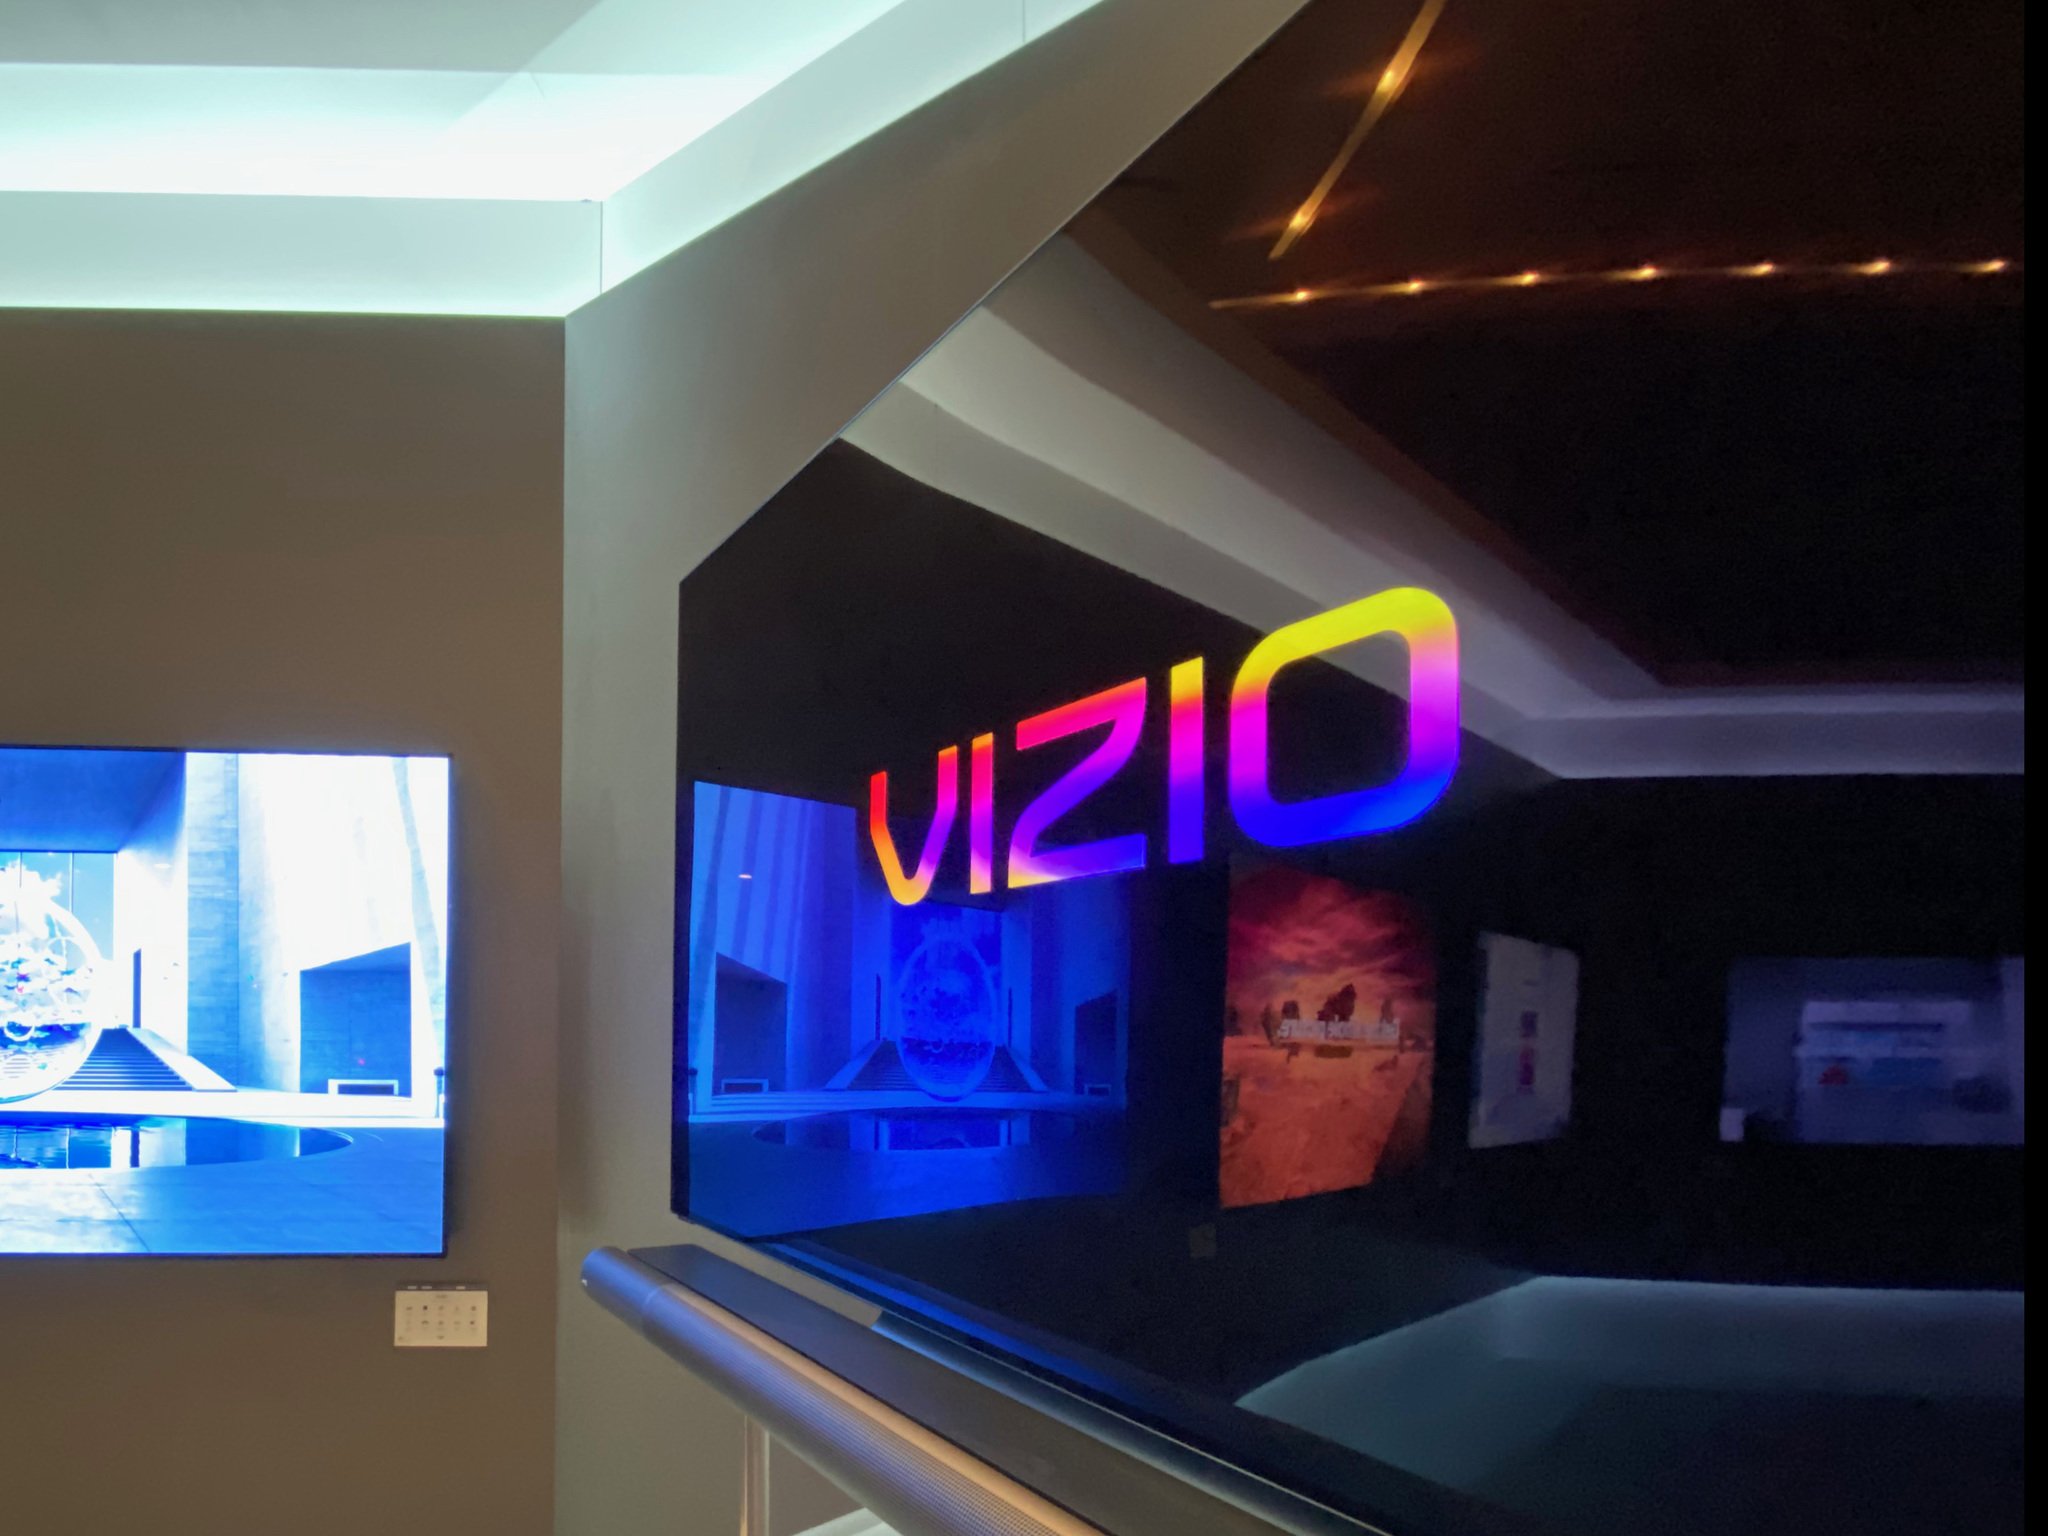 The Vizio OLED TV at CES 2020